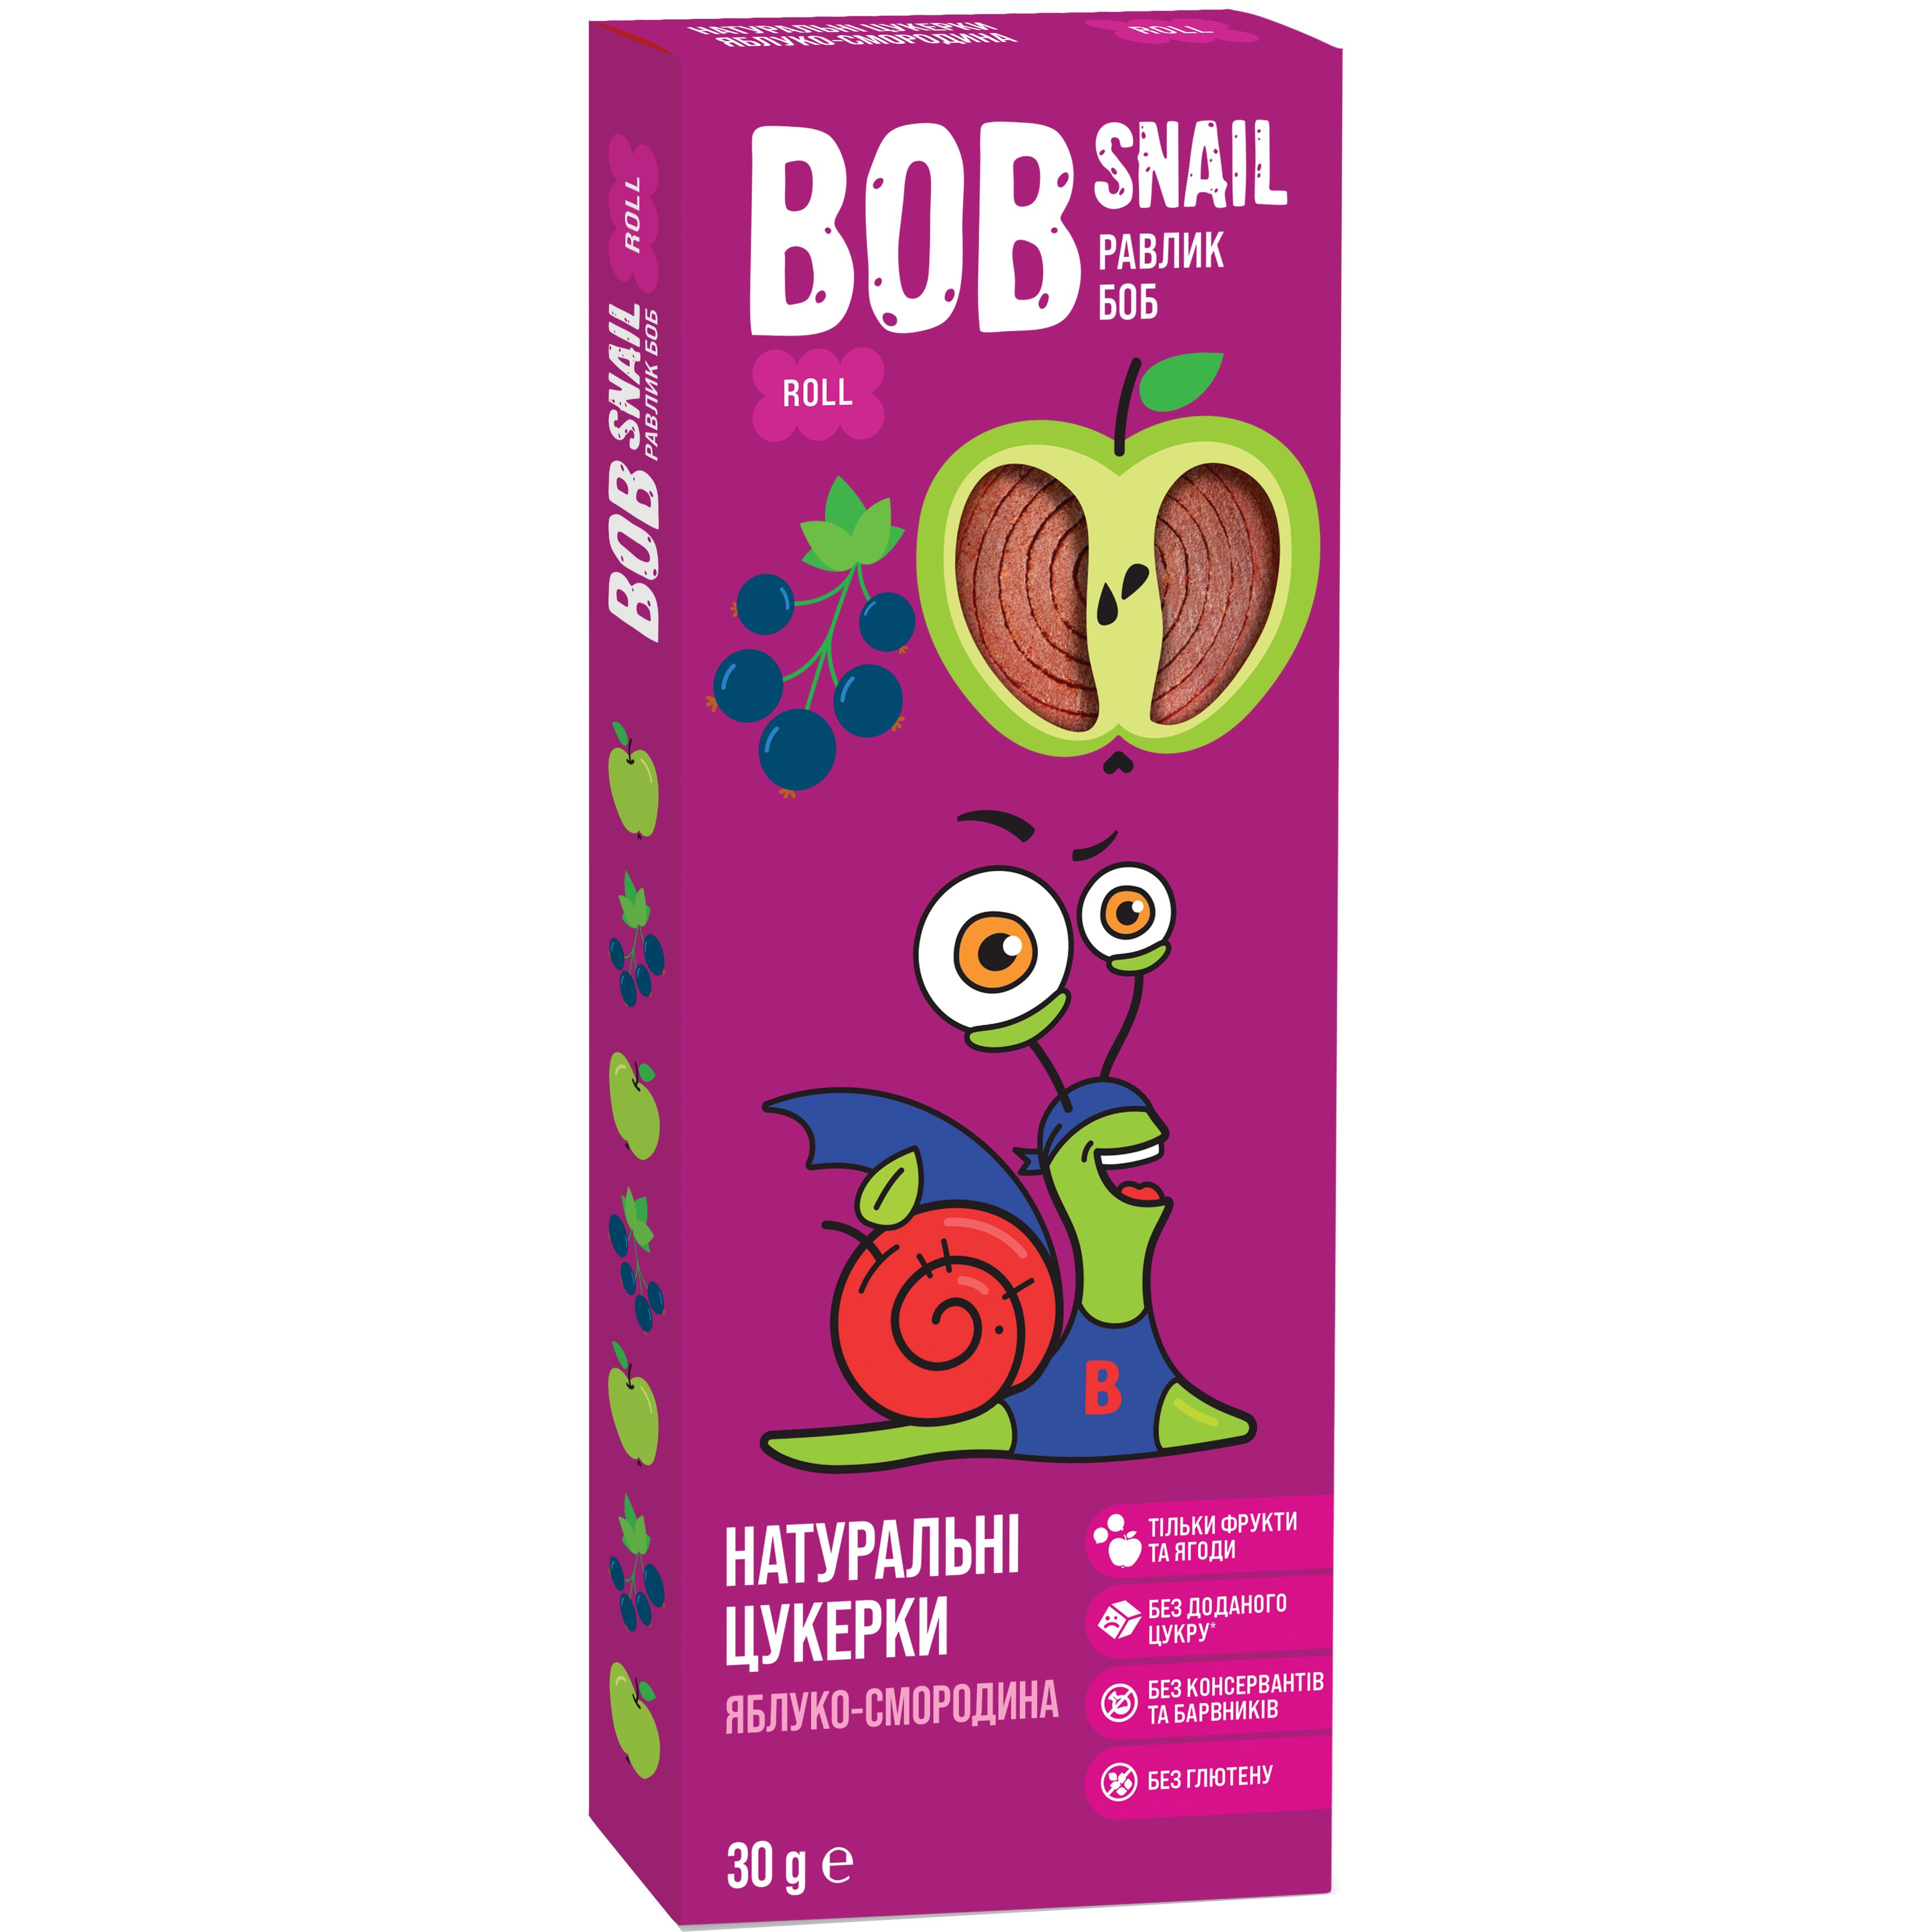 Фруктові яблучно-чорносмородинові цукерки Bob Snail 30 г - фото 1